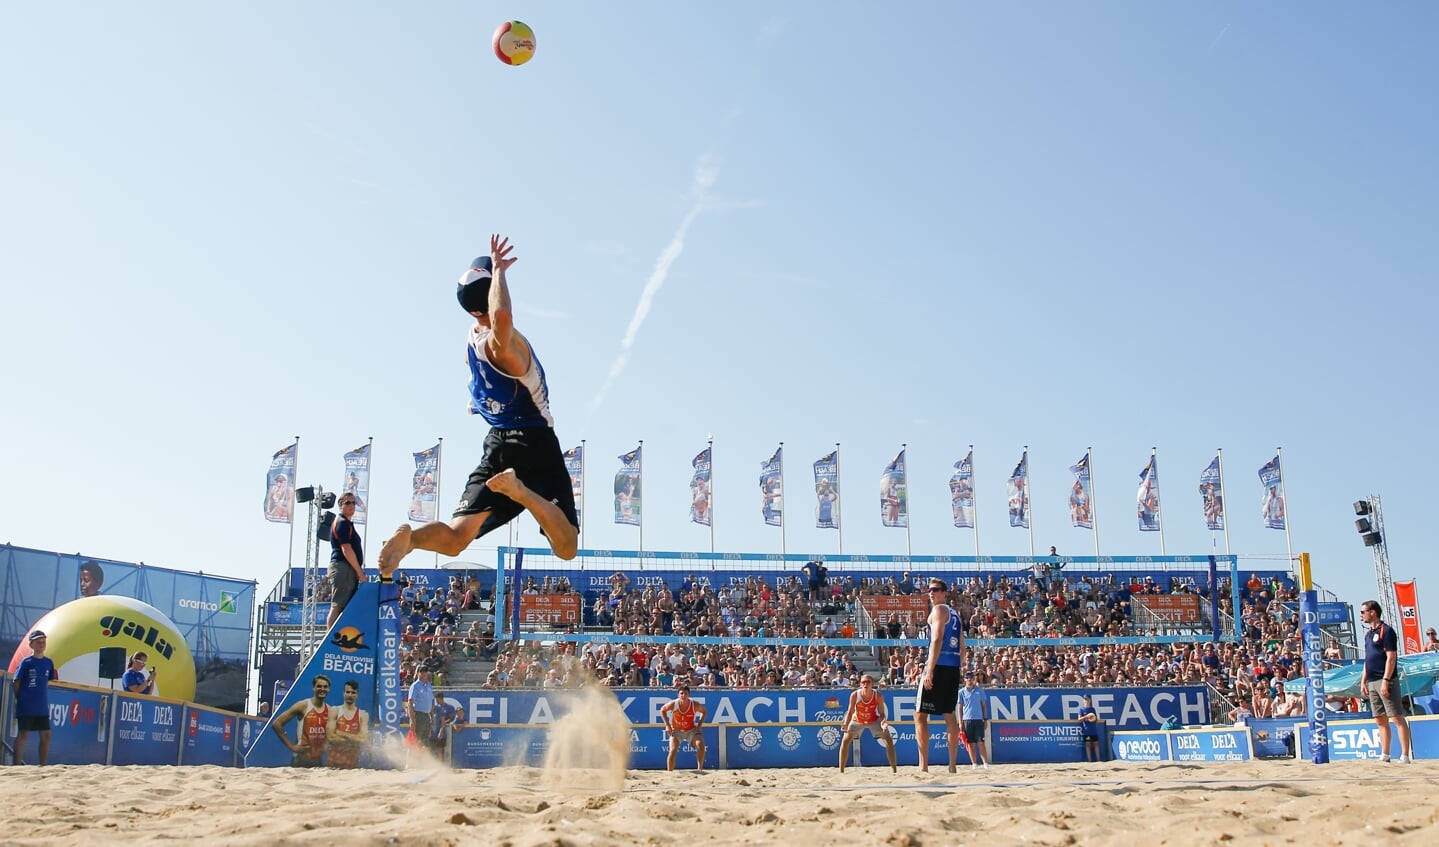 De beste beachvolleyballers van Nederland komen in actie in het stadion in Scheveningen. 